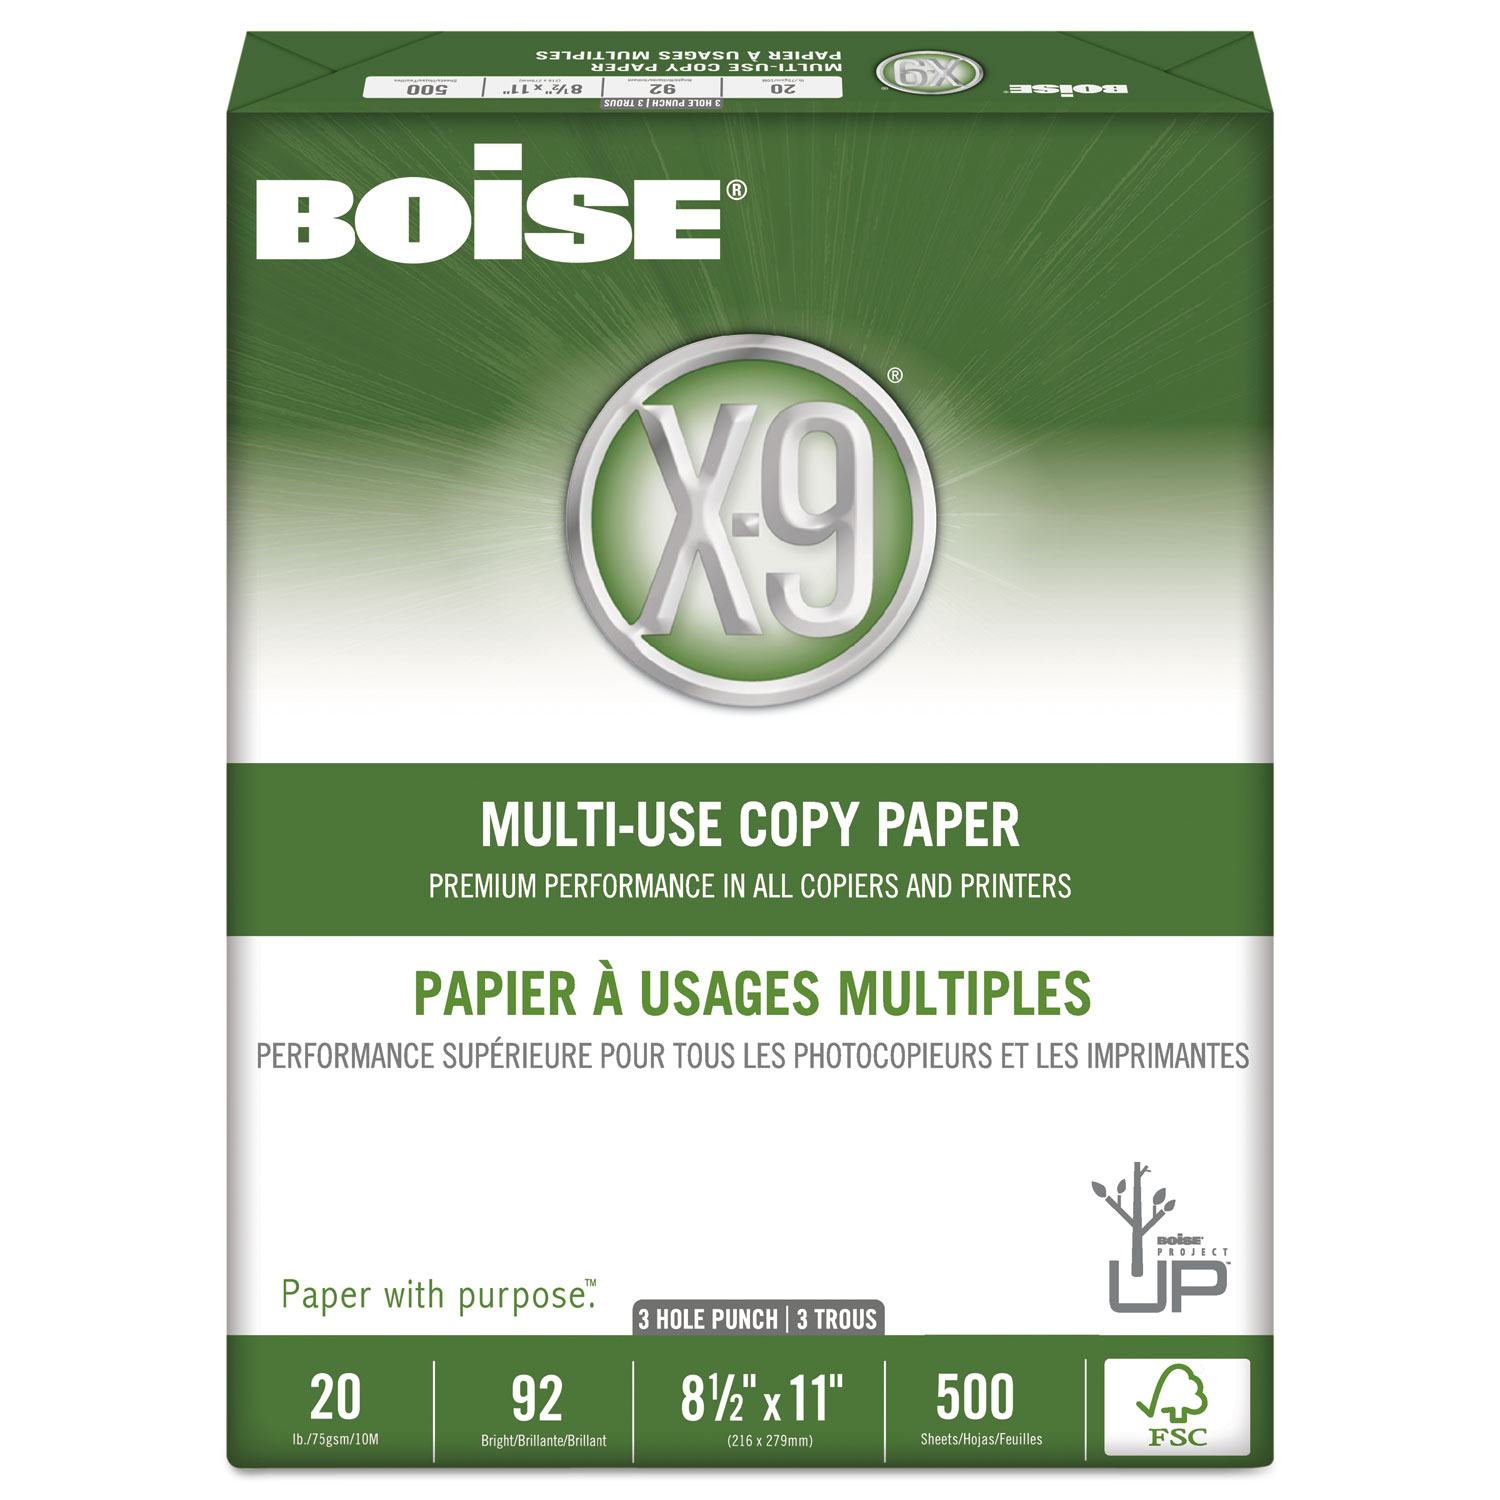 X-9 Multi-Use Copy Paper, 92 Bright, 3-Hole, 20lb, 8.5 x 11, White, 500 Sheets/Ream, 10 Reams/Carton